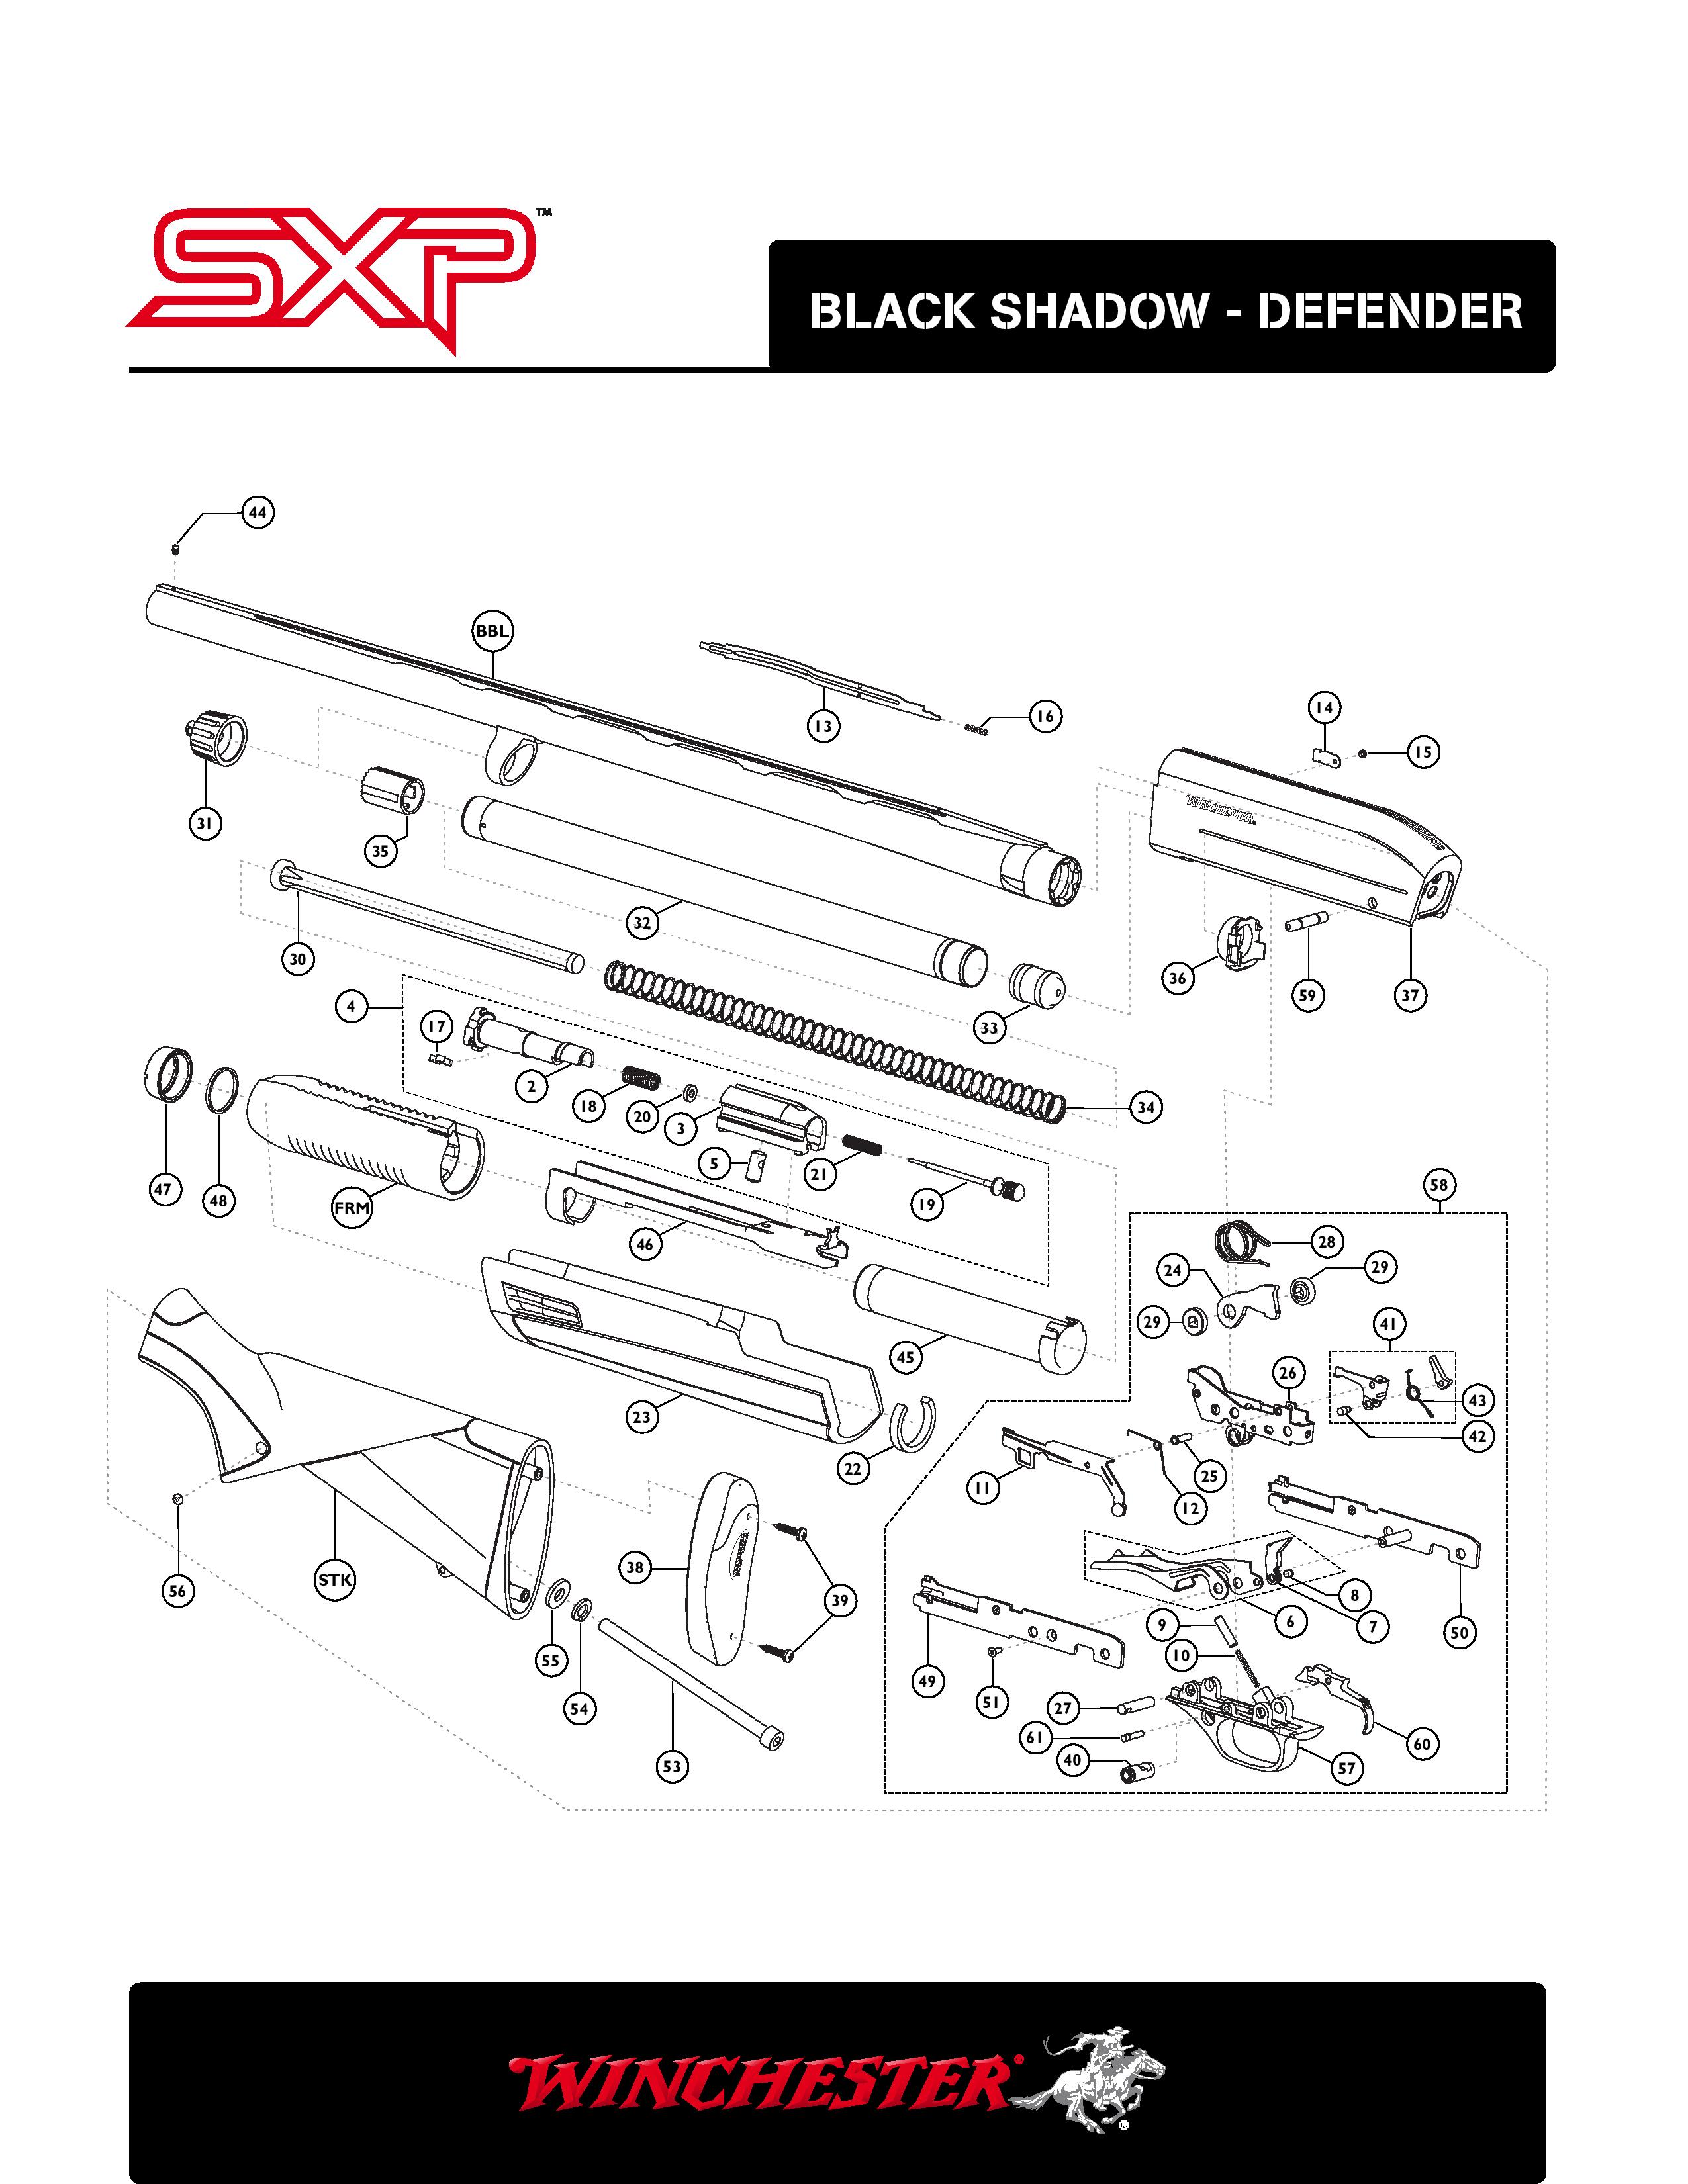 SXP-page-001.jpg